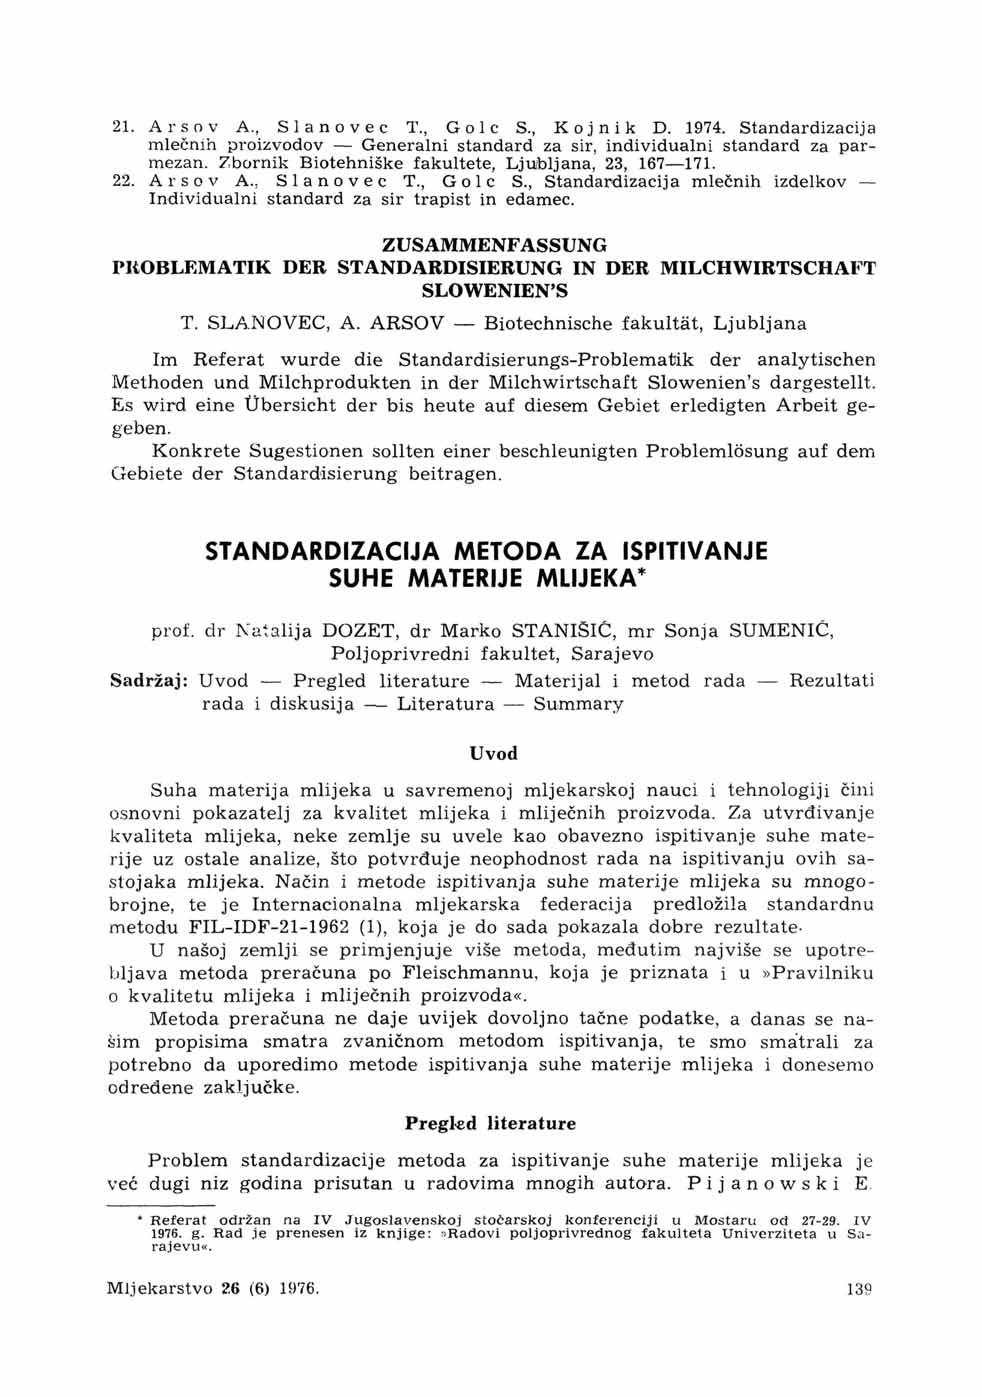 21. Arsov A., Slanovec T., Gole S., Kojnik D. 1974. Standardizacija mlečnih proizvodov Generalni standard za sir, individualni standard za parmezan.